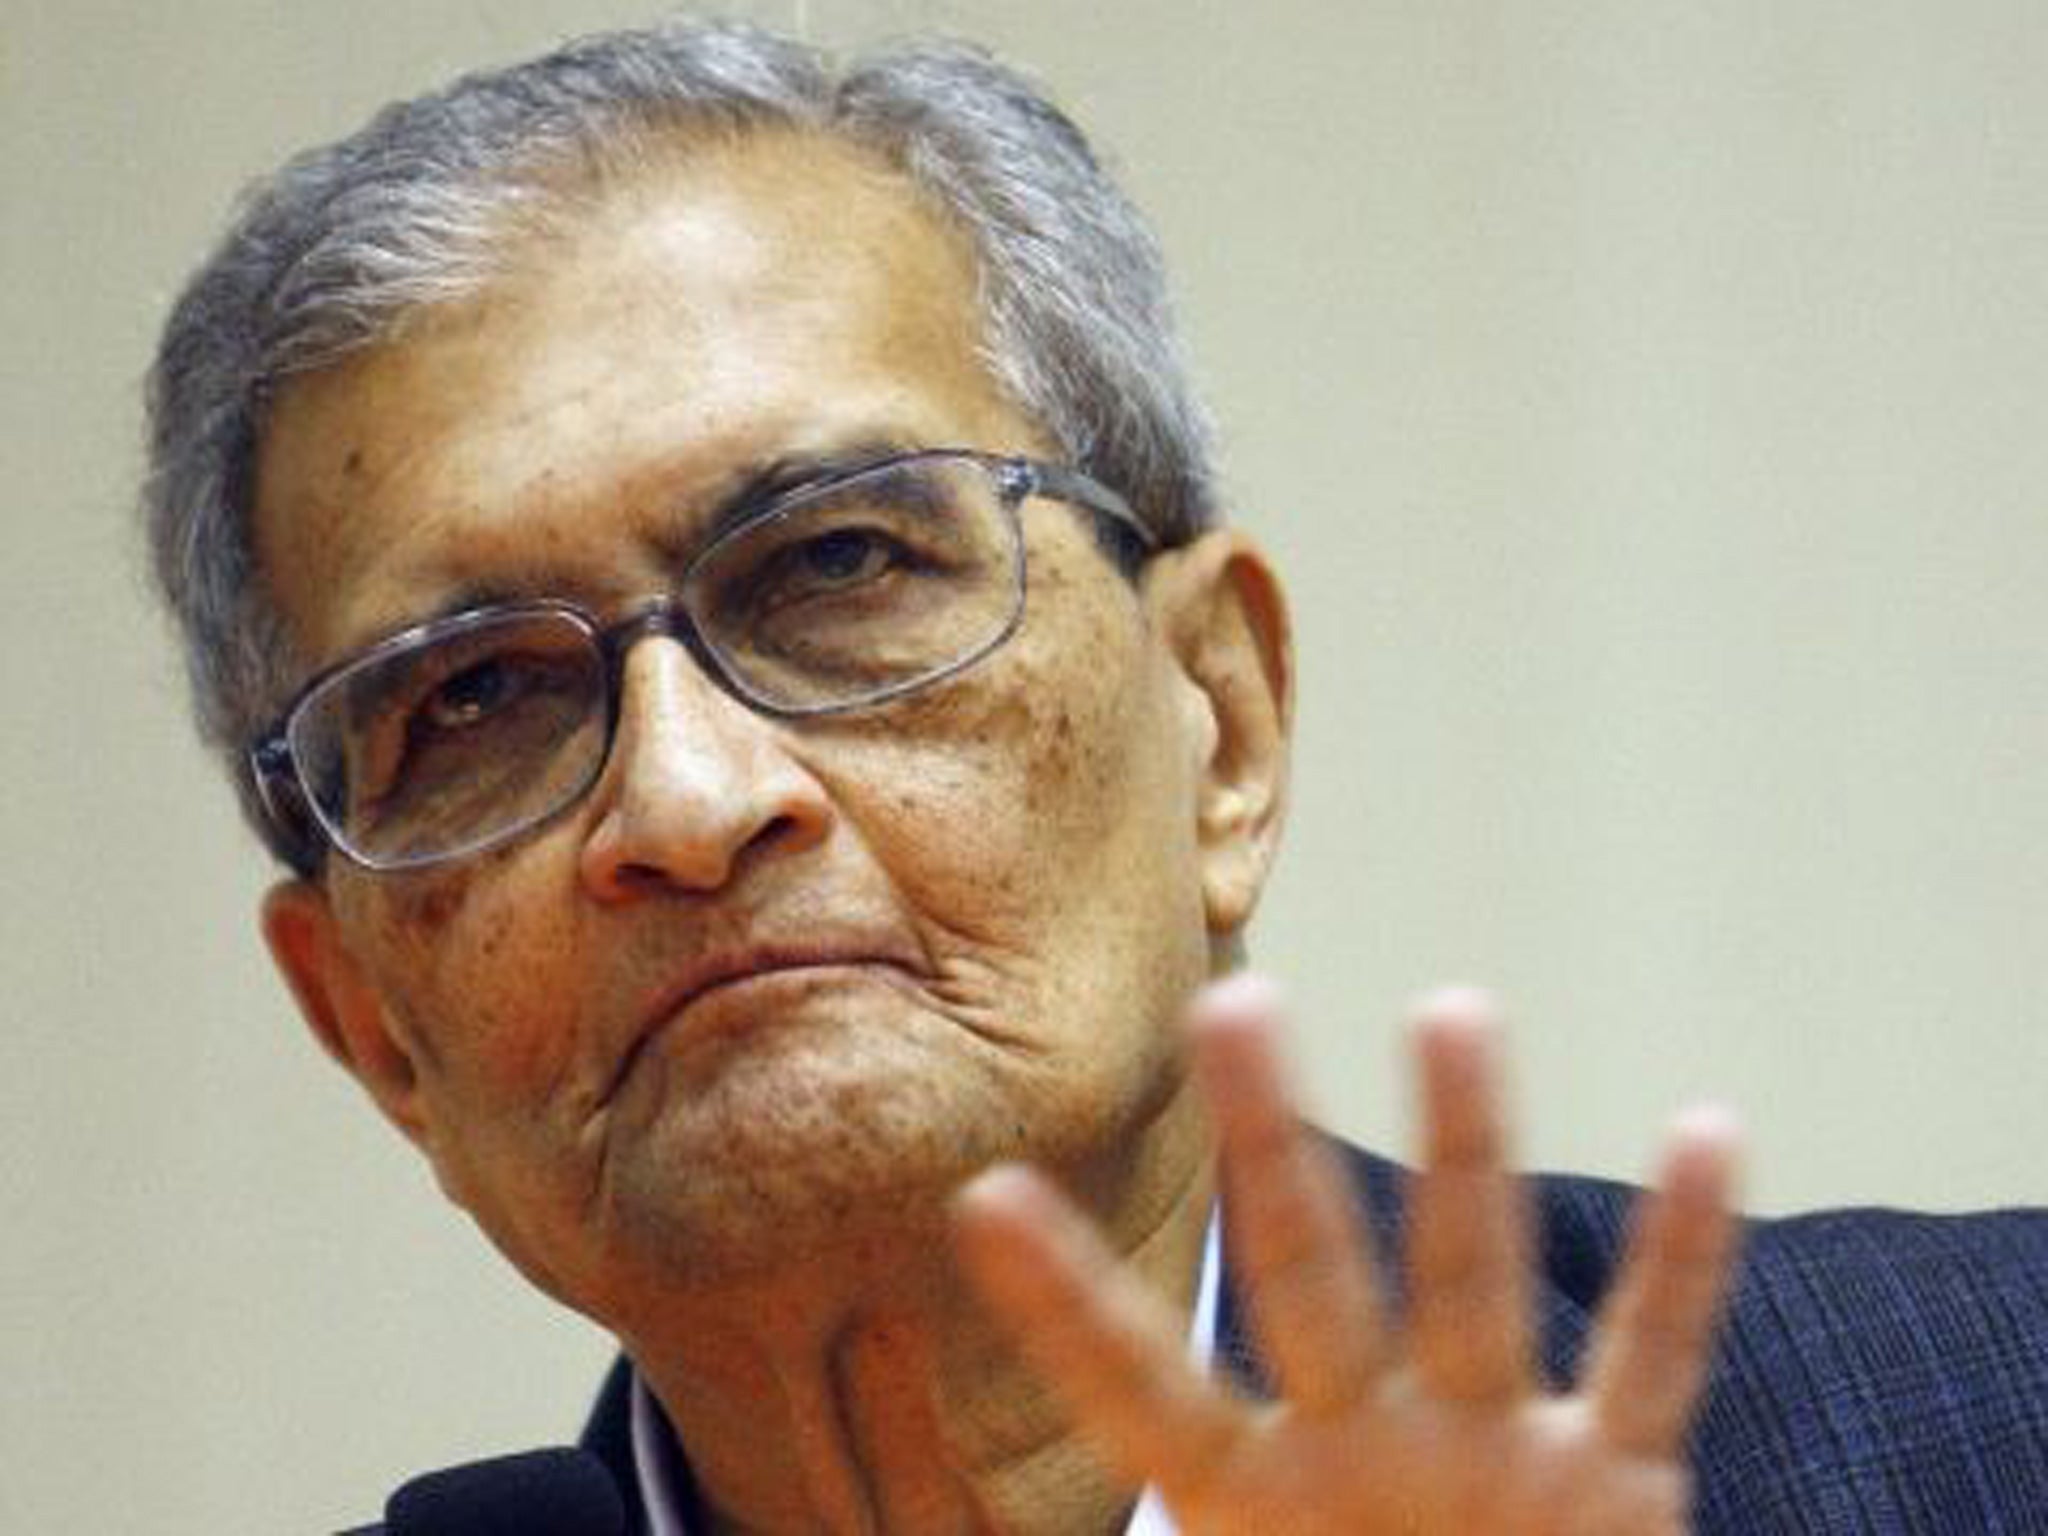 Amartya Sen, professor of economics and of philosophy at Harvard University, is an Indian-born Nobel laureate